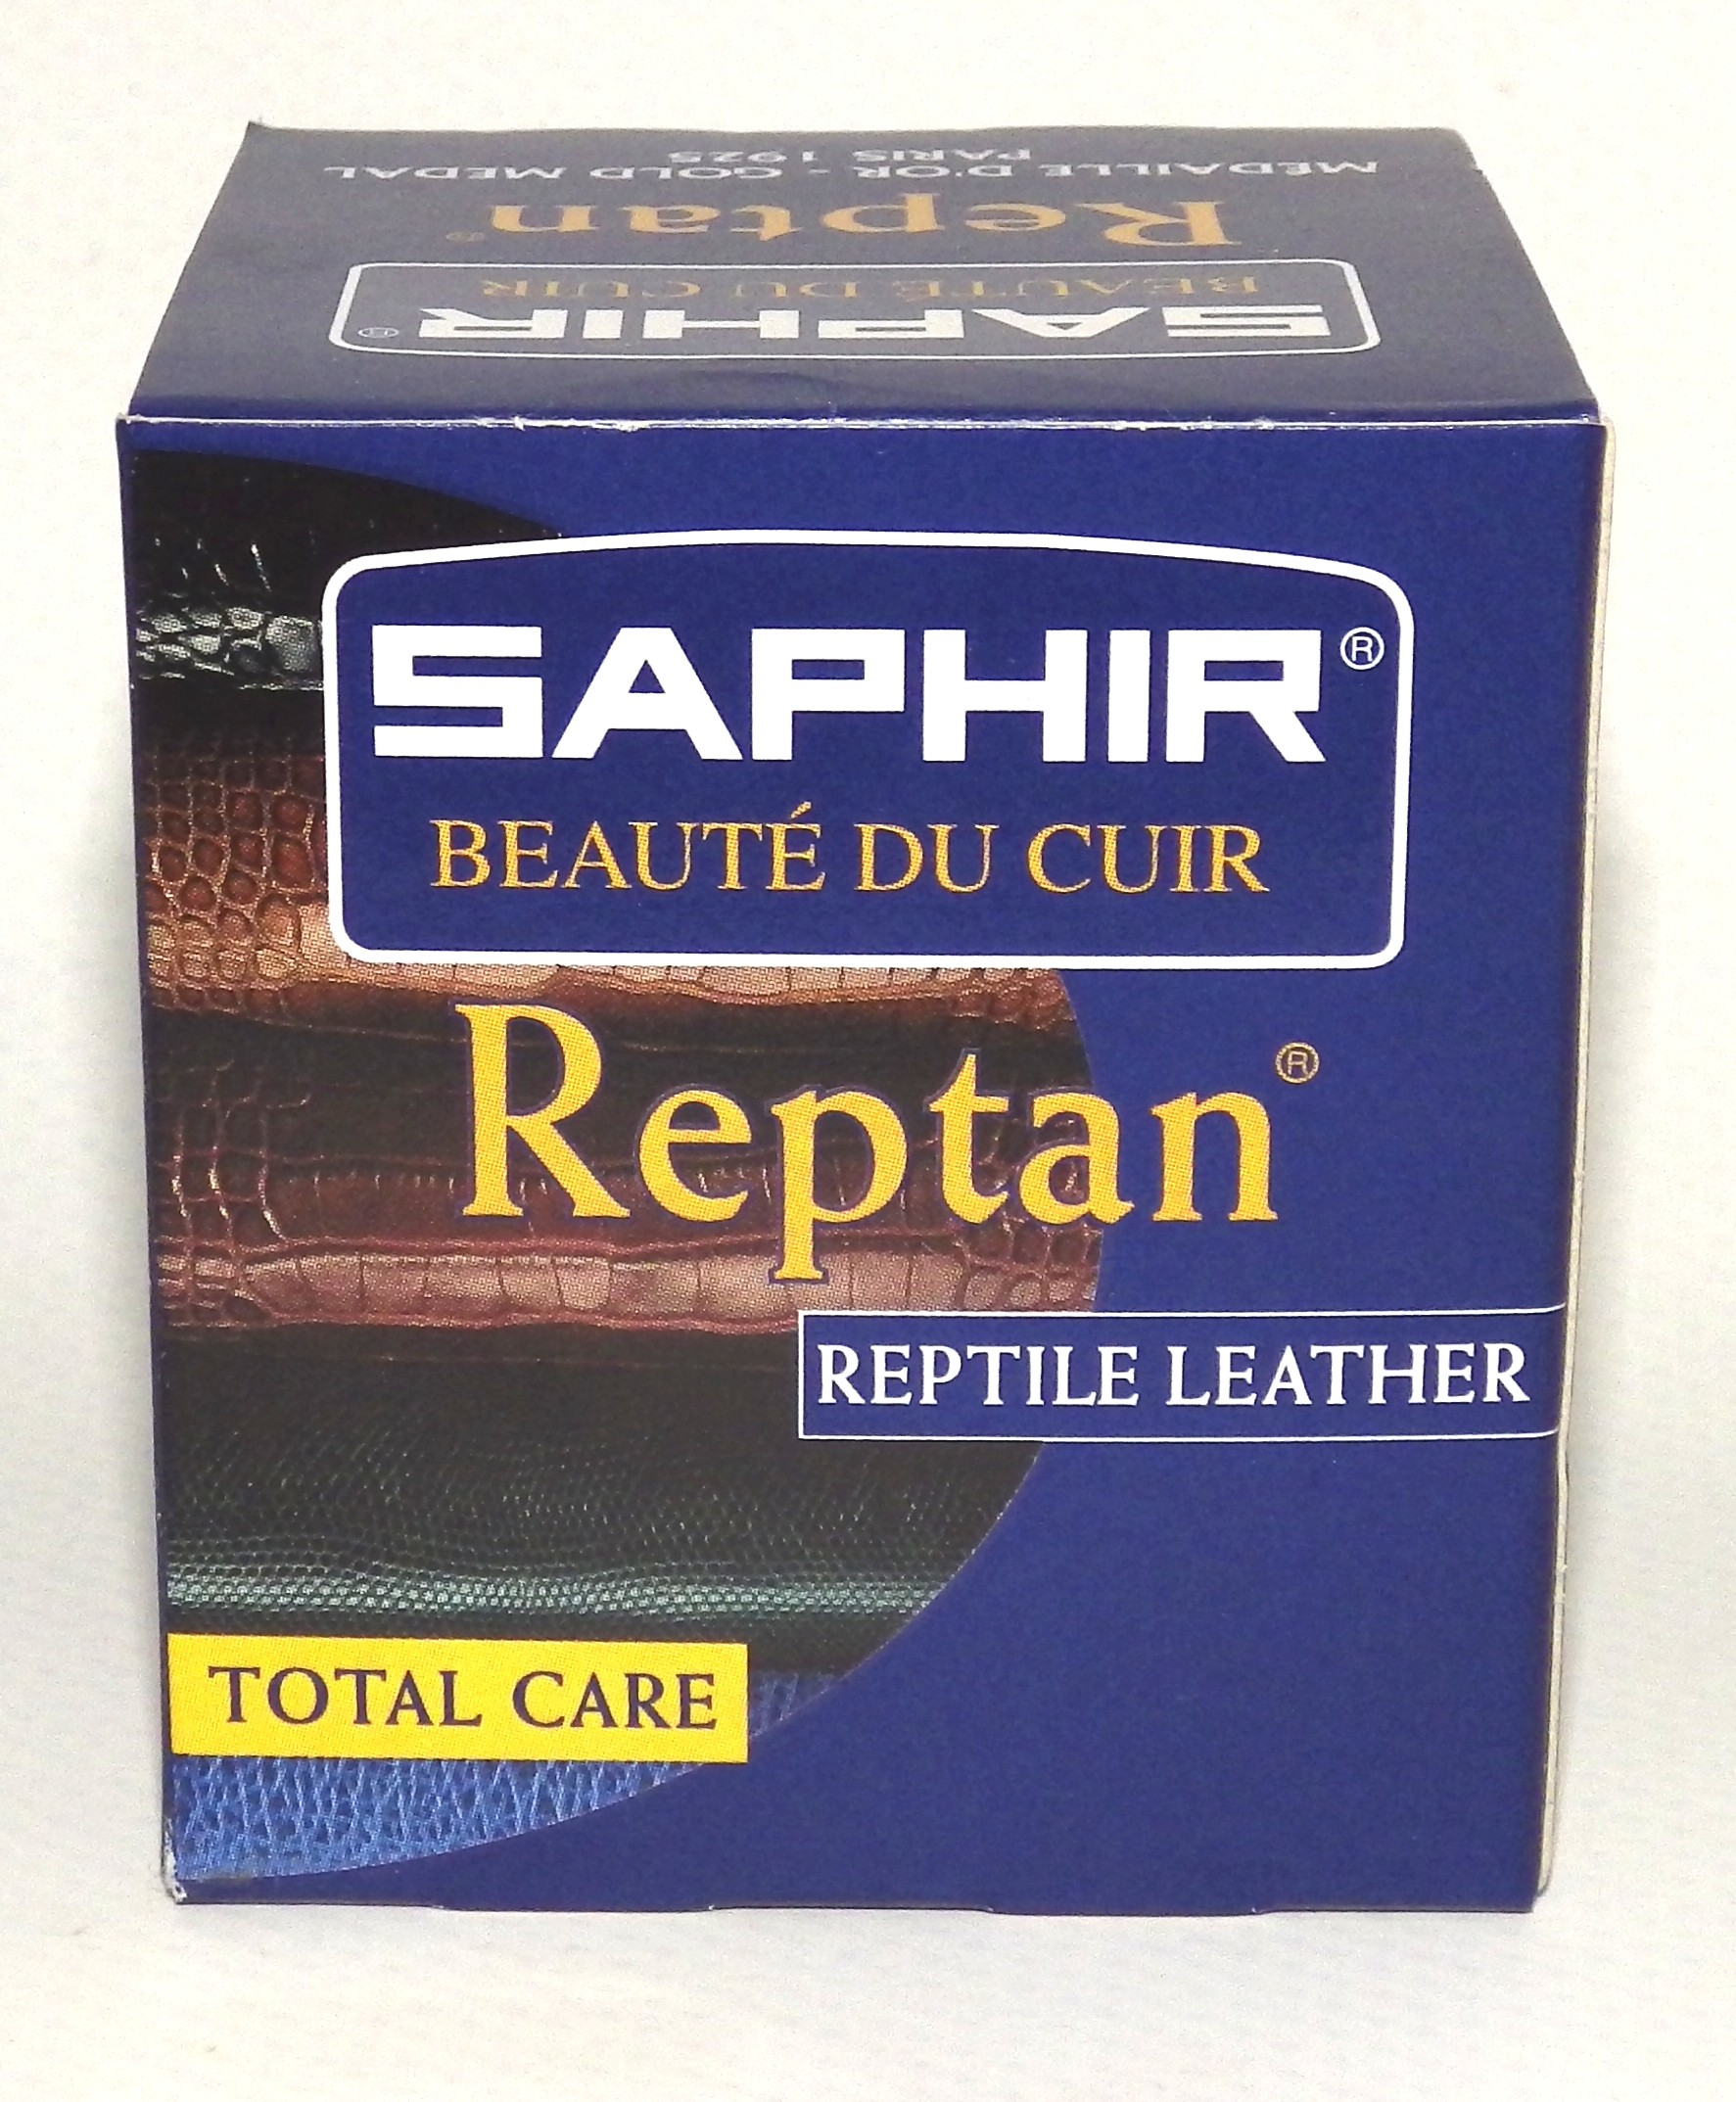 Chamoisine Saphir en coton pour l'entretien du cuir